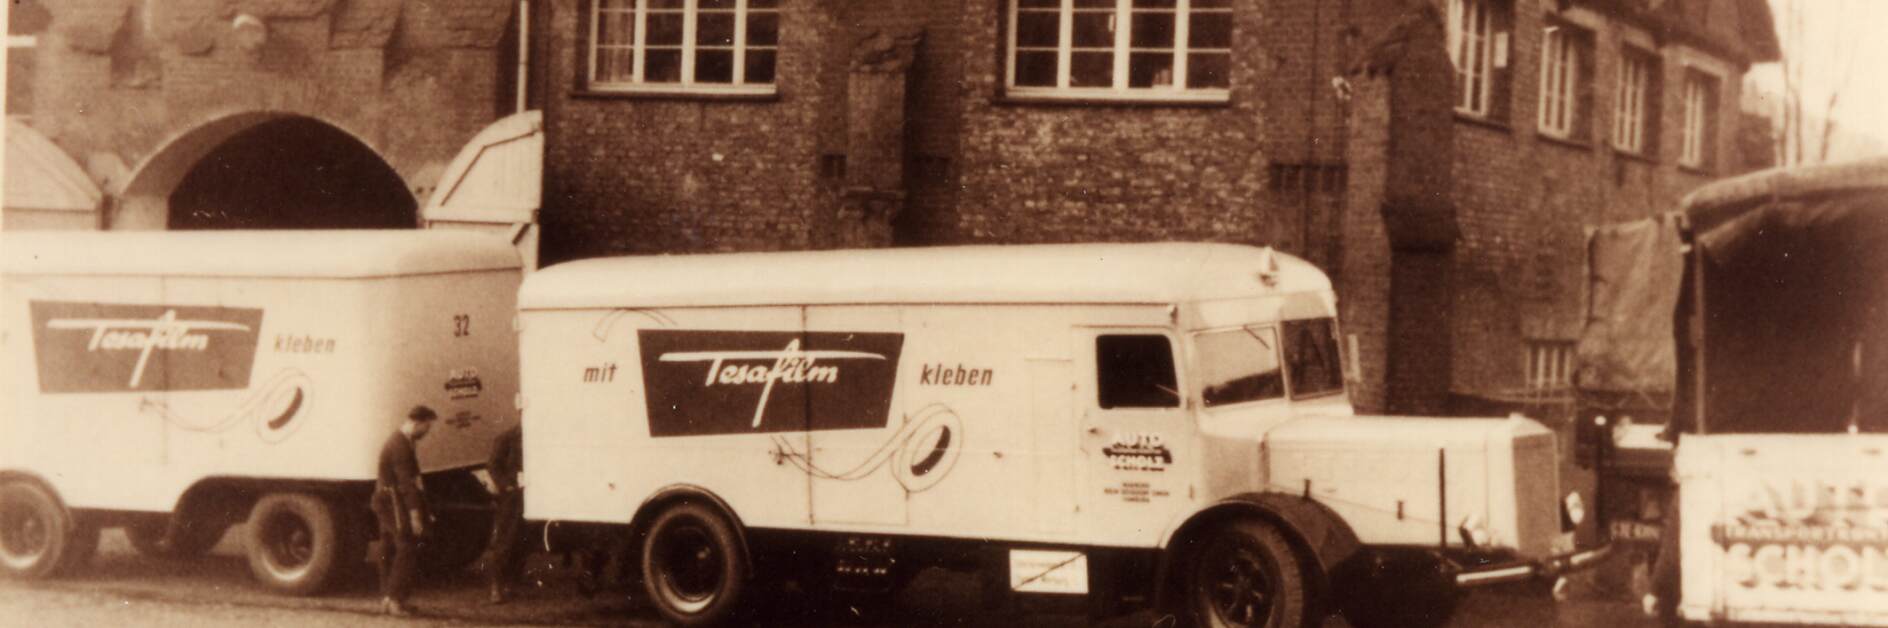 Φορτηγό της tesa με διαφήμιση του tesafilm από το 1952